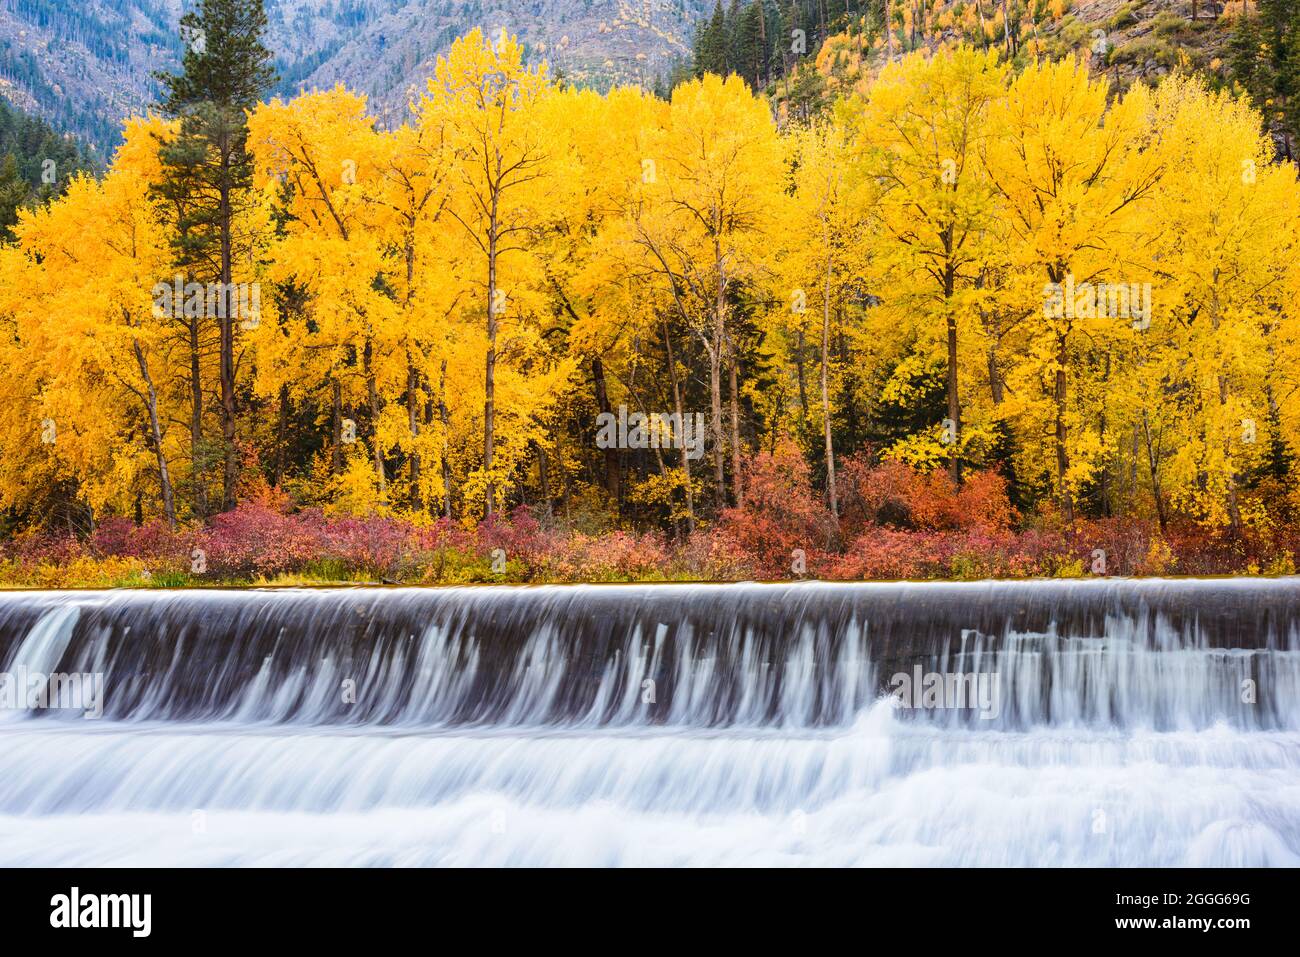 Un groupe d'arbres jaunes en automne au-dessus du barrage de Tumwater dans les Cascades de Washington Banque D'Images